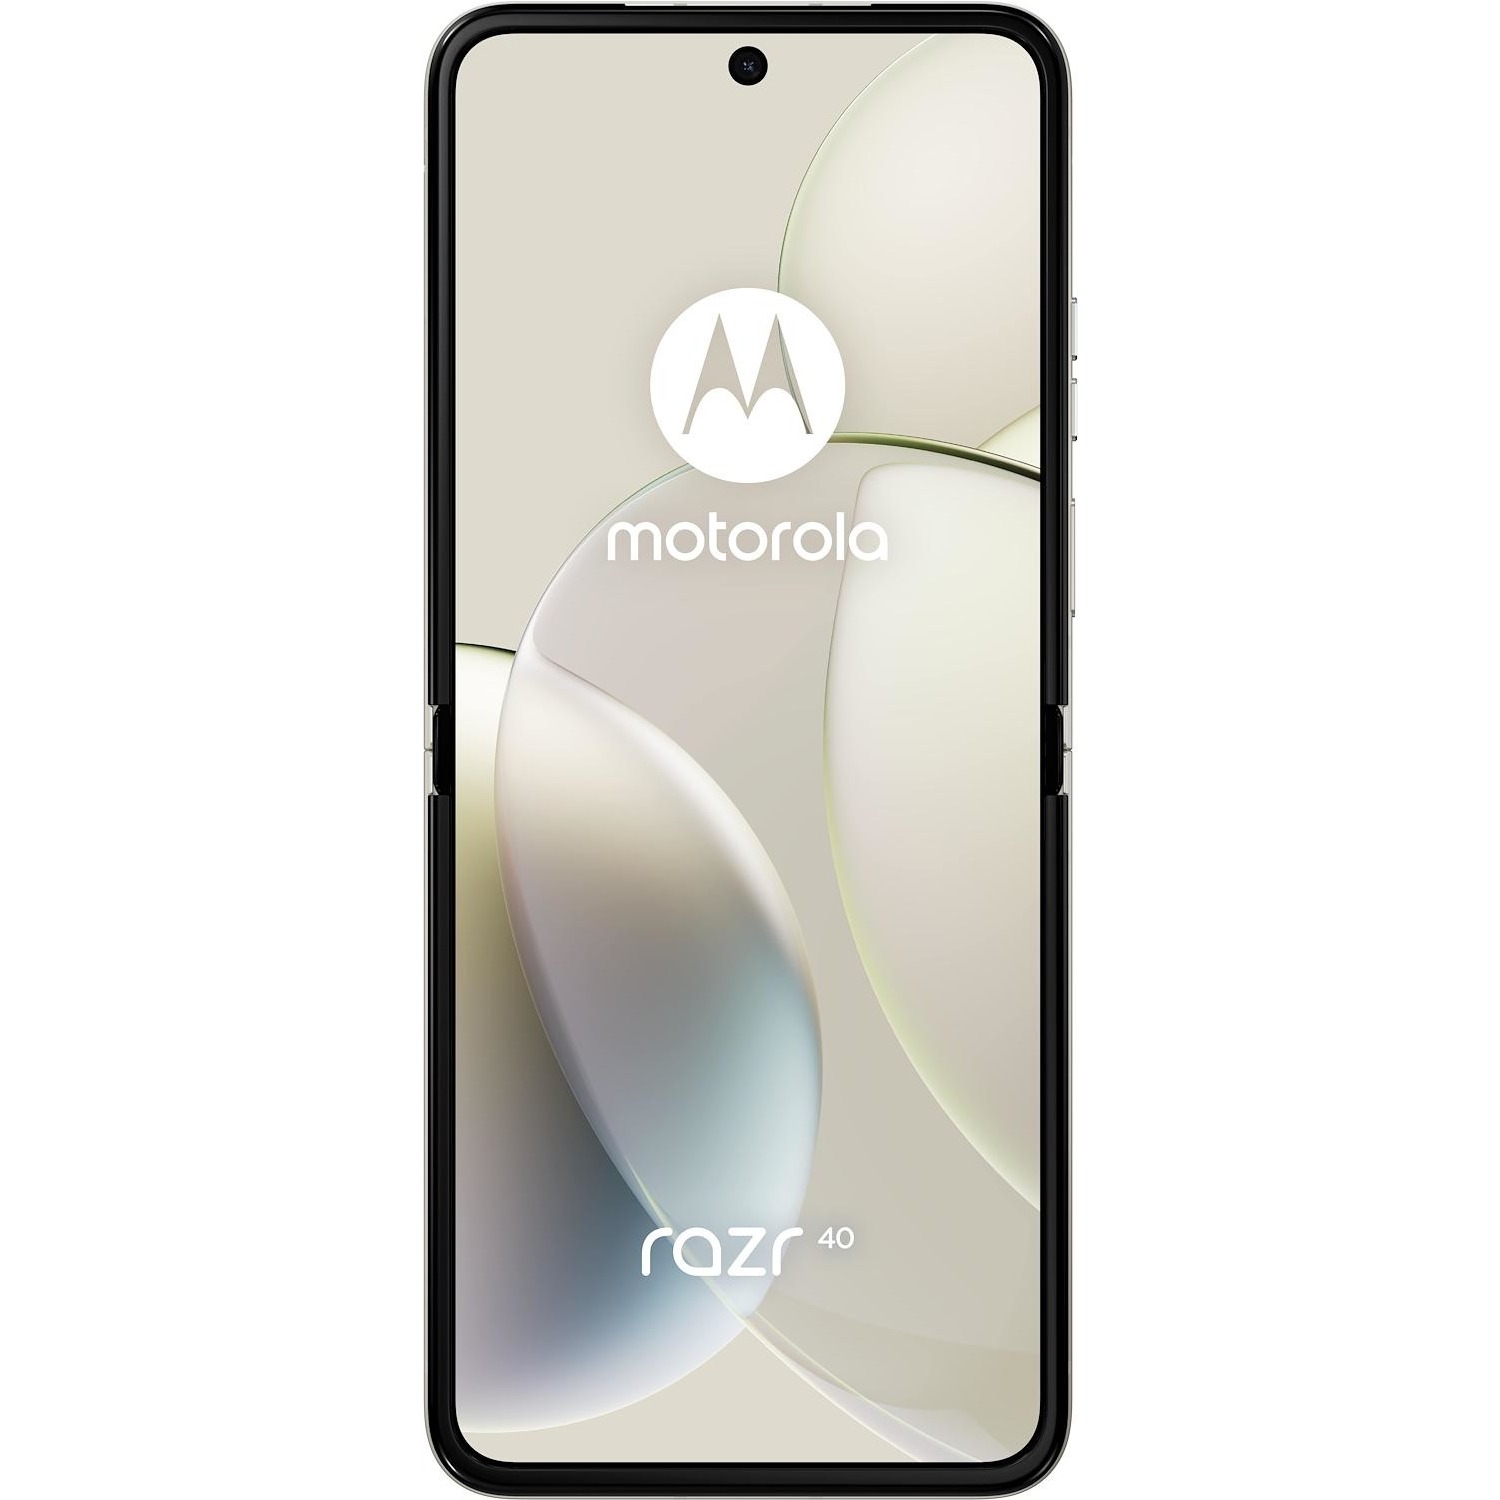 Immagine per Smartphone Motorola Razr 40 vanilla cream crema da DIMOStore